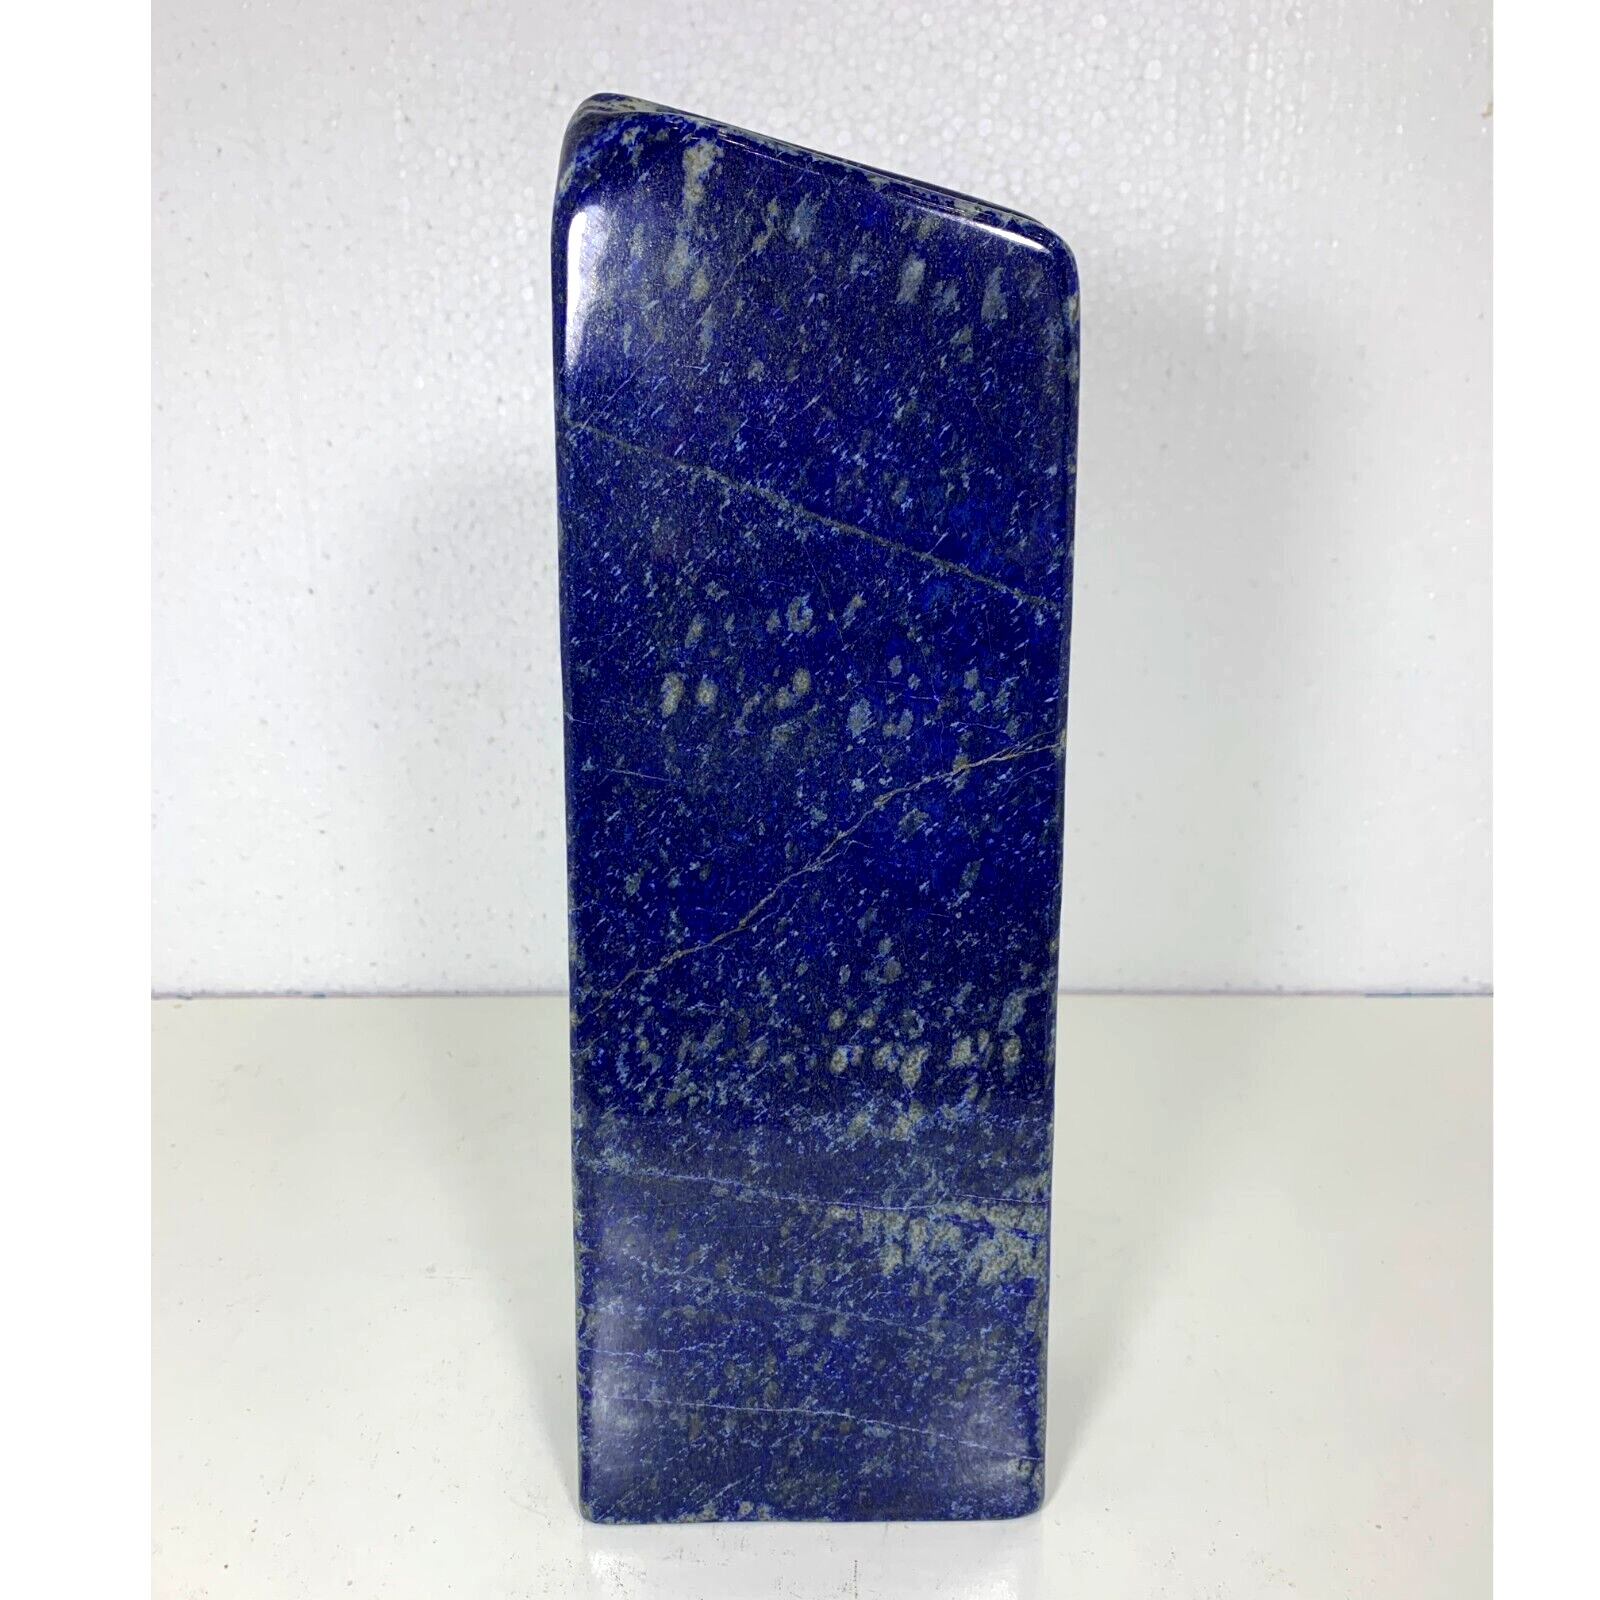 26.4LB Large Lapis Lazuli Polished Freeform Tumbled Stone Crystal Rough Shape